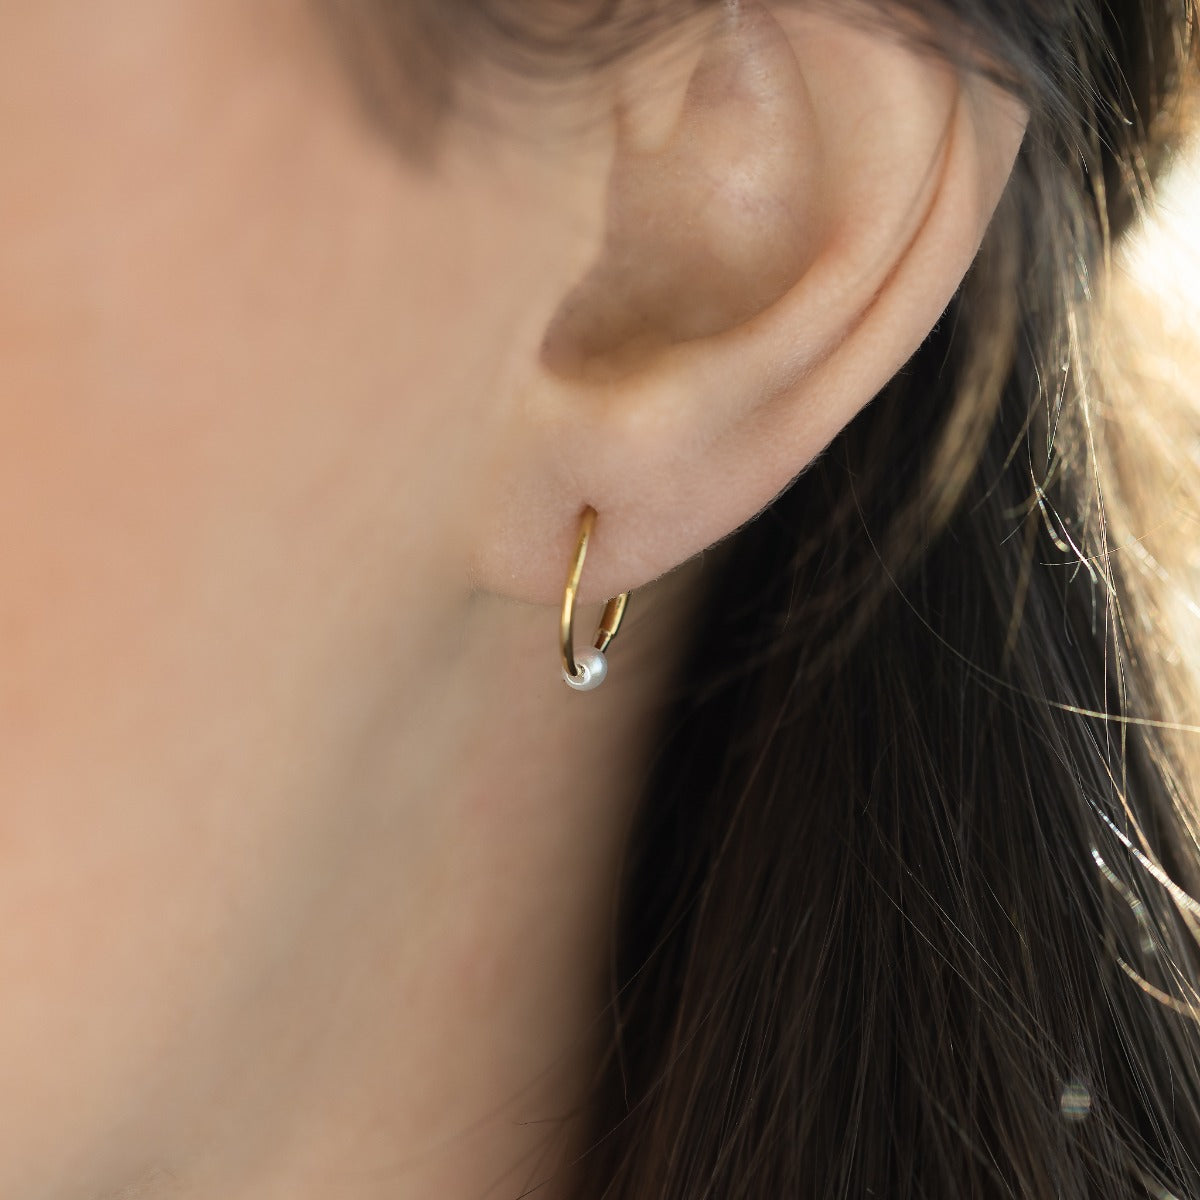 Mini boucles d’oreilles dorées dormeuses 10mm avec perle 2.5 Mm en acier inoxydable